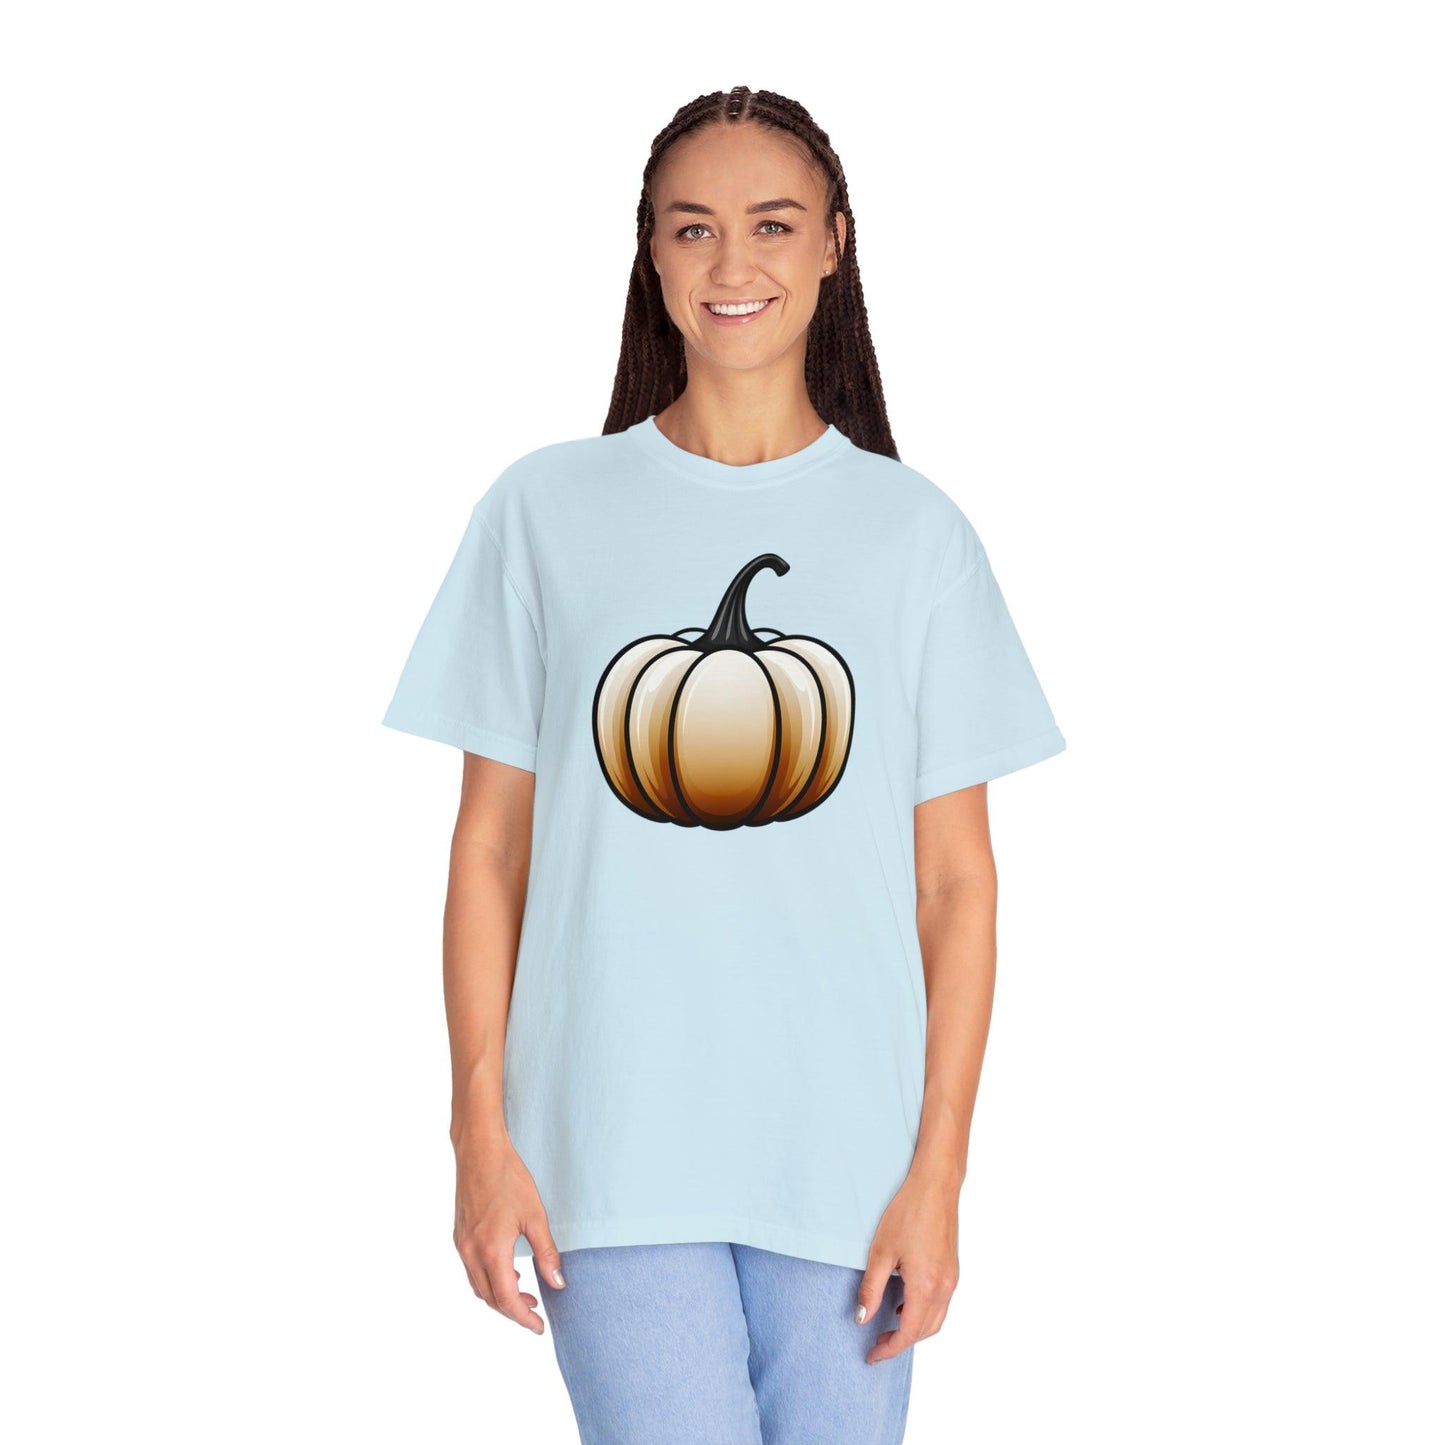 Pumpkin Shirt Halloween Shirt Fall Gift Halloween Costume Pumpkin T Shirt - Cute Pumpkin Tee Fall Shirt Halloween Gift Pumpkin Lover Shirt